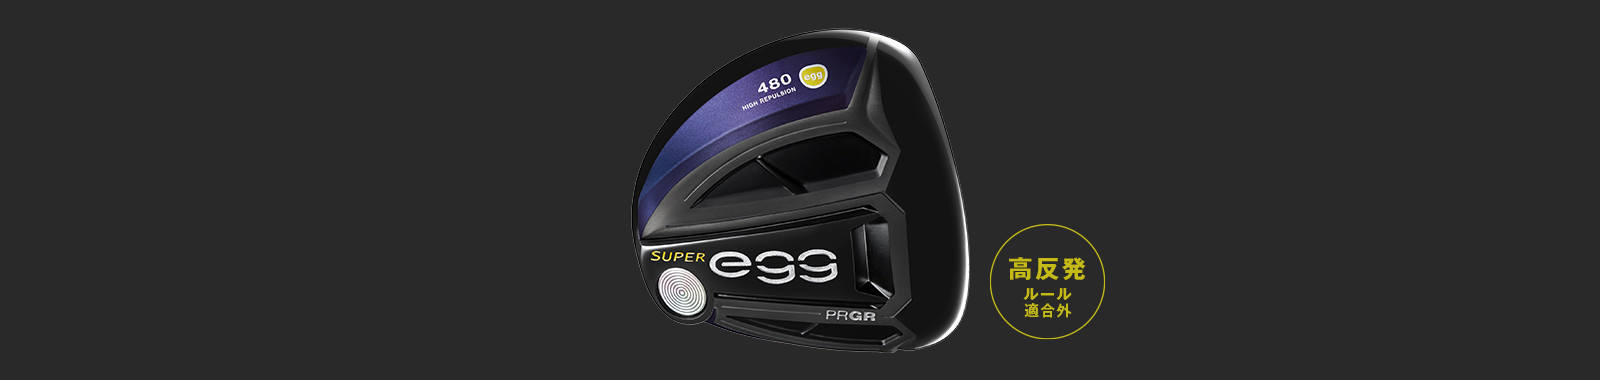 NEW SUPER egg 480 ドライバー／高反発モデル